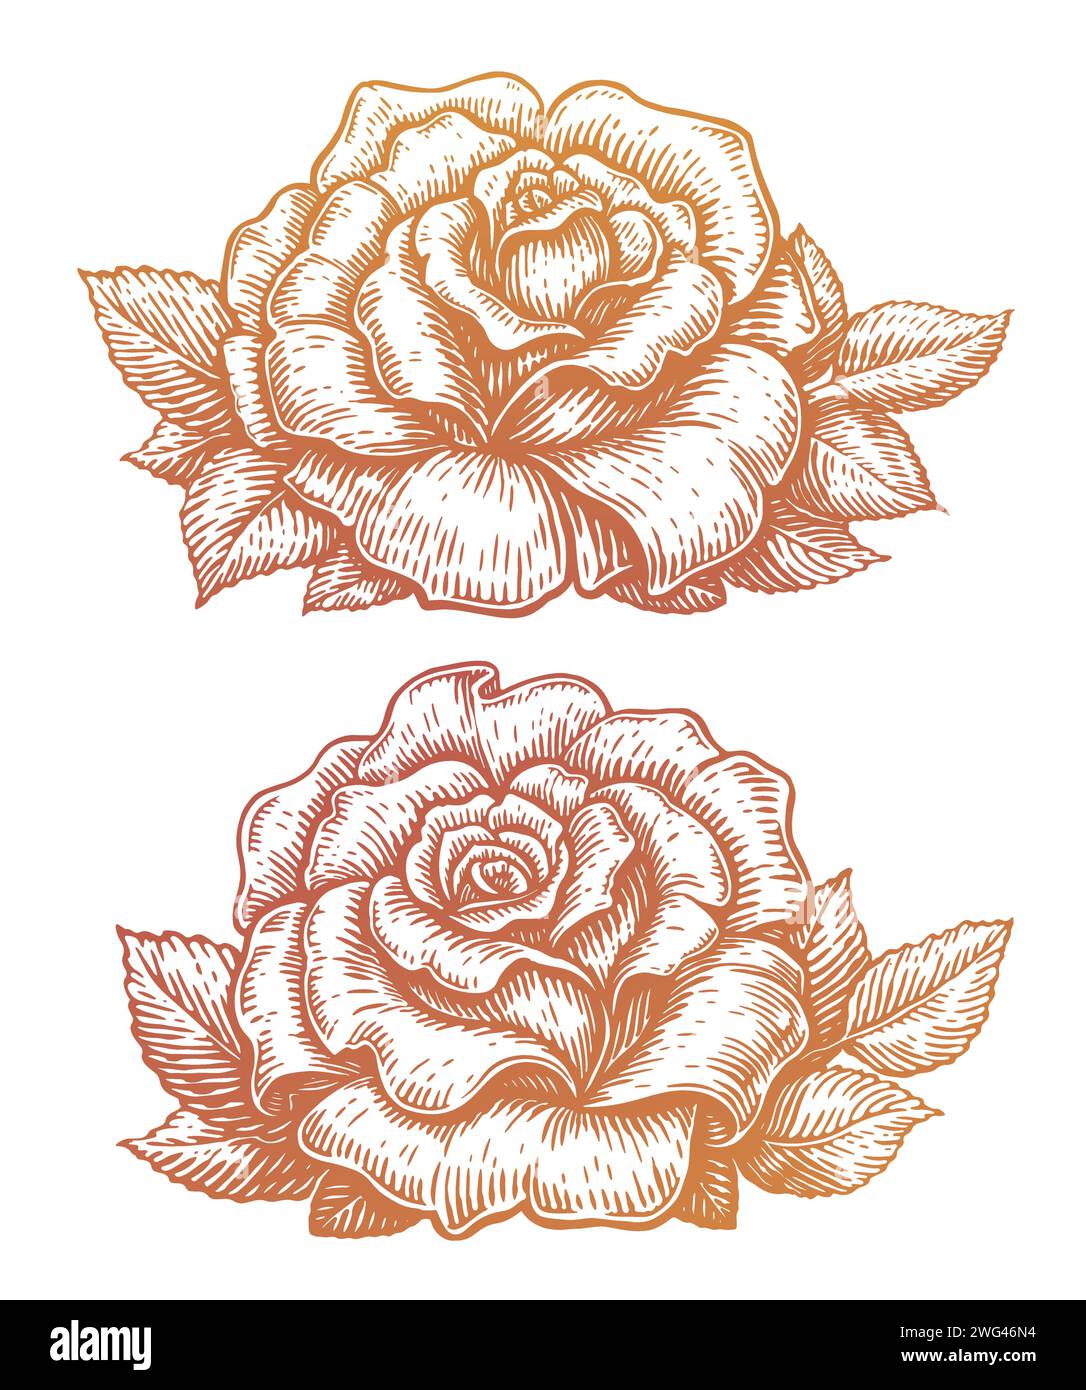 Wunderschöne Blume. Elegante, detailreiche Rosenblüte mit Blättern. Handgezeichnete Vintage-Vektor-Illustration Stock Vektor